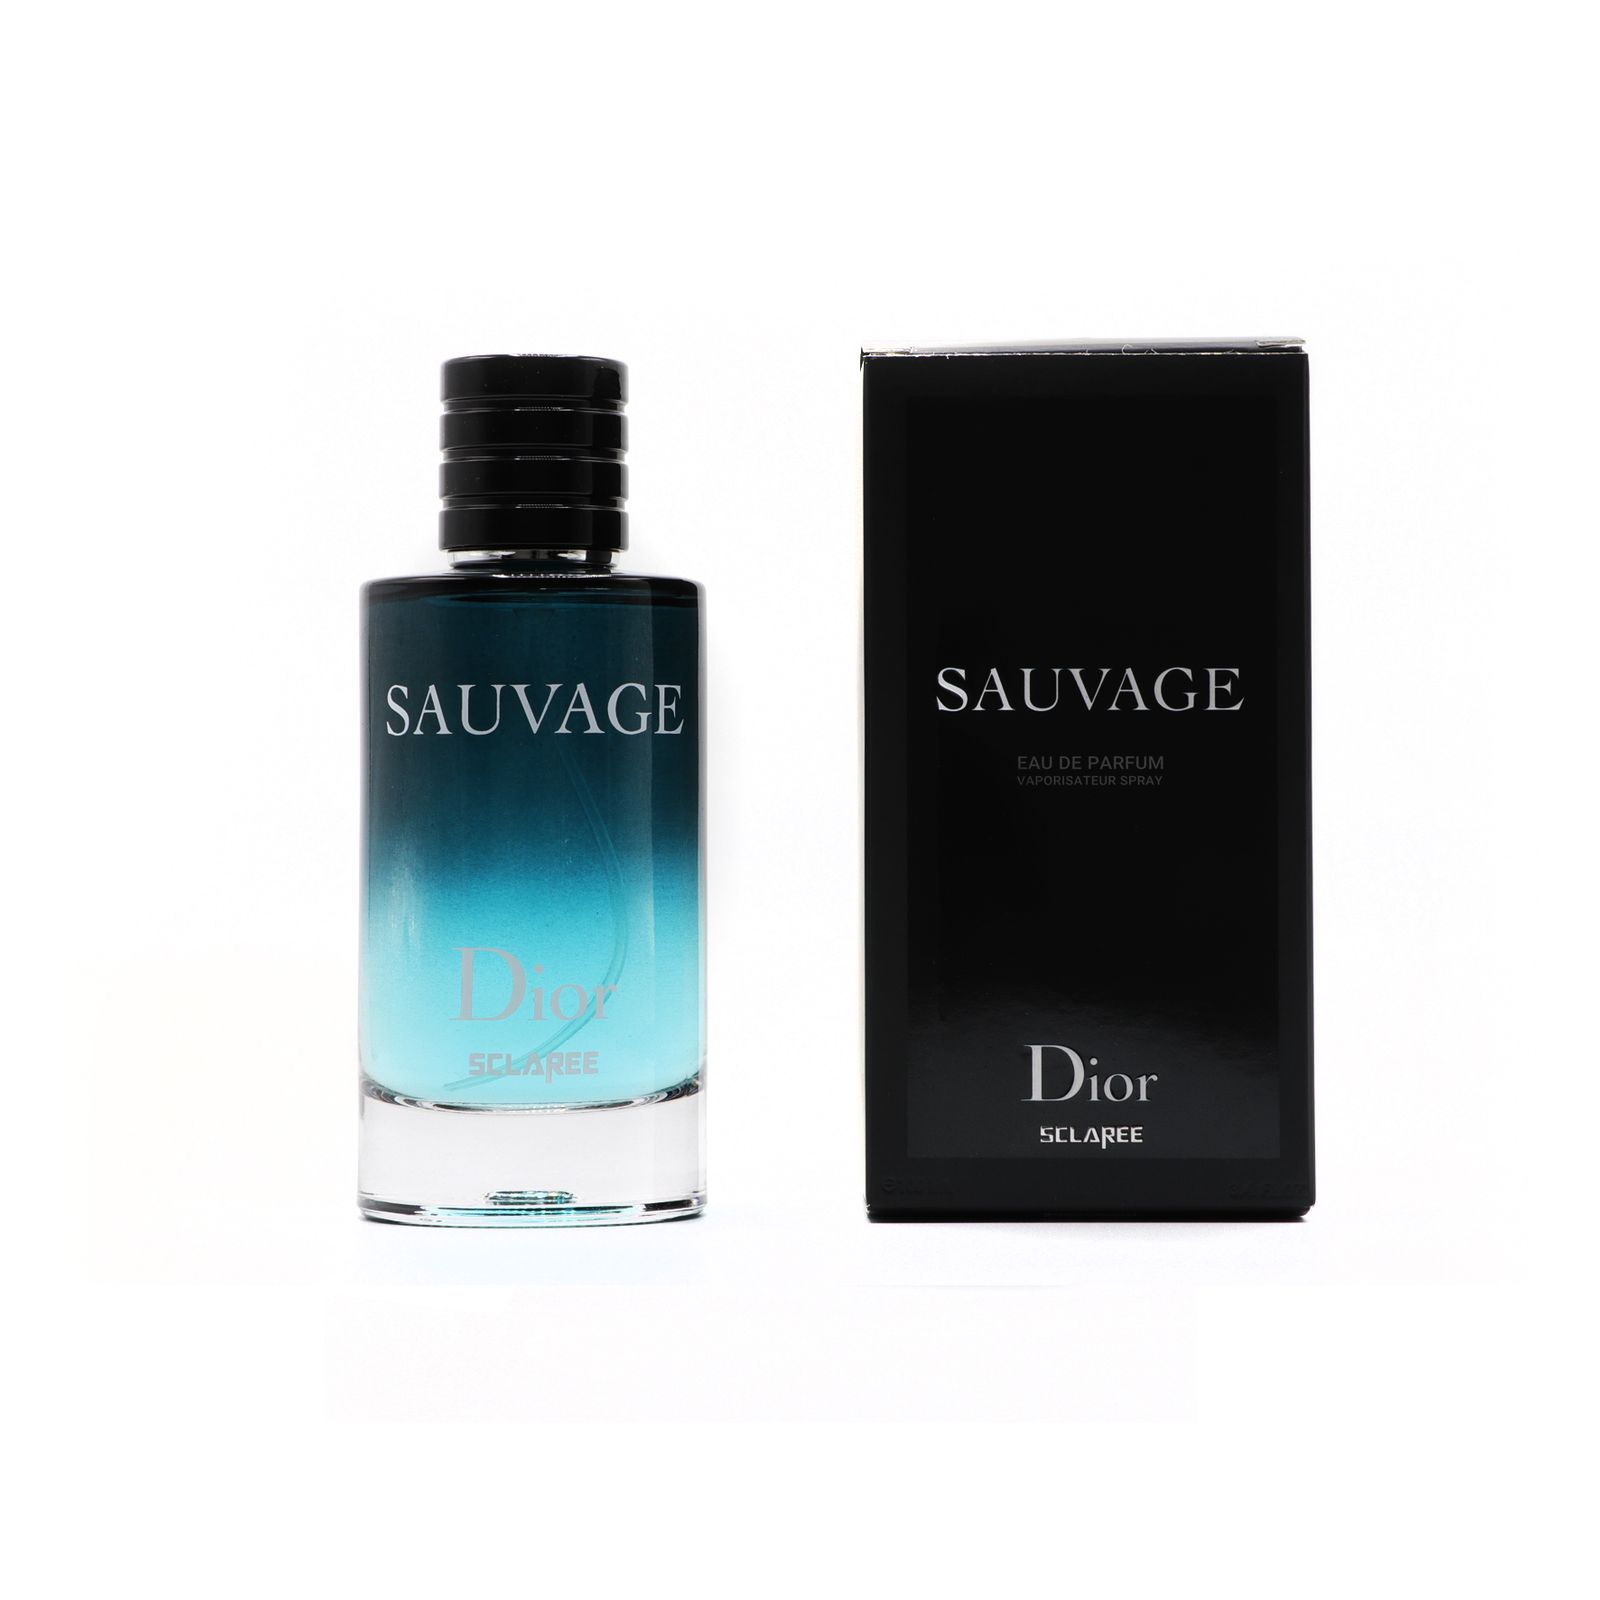 ادو پرفیوم مردانه اسکلاره مدل Sauvage Dior حجم 100 میلی لیتر -  - 2